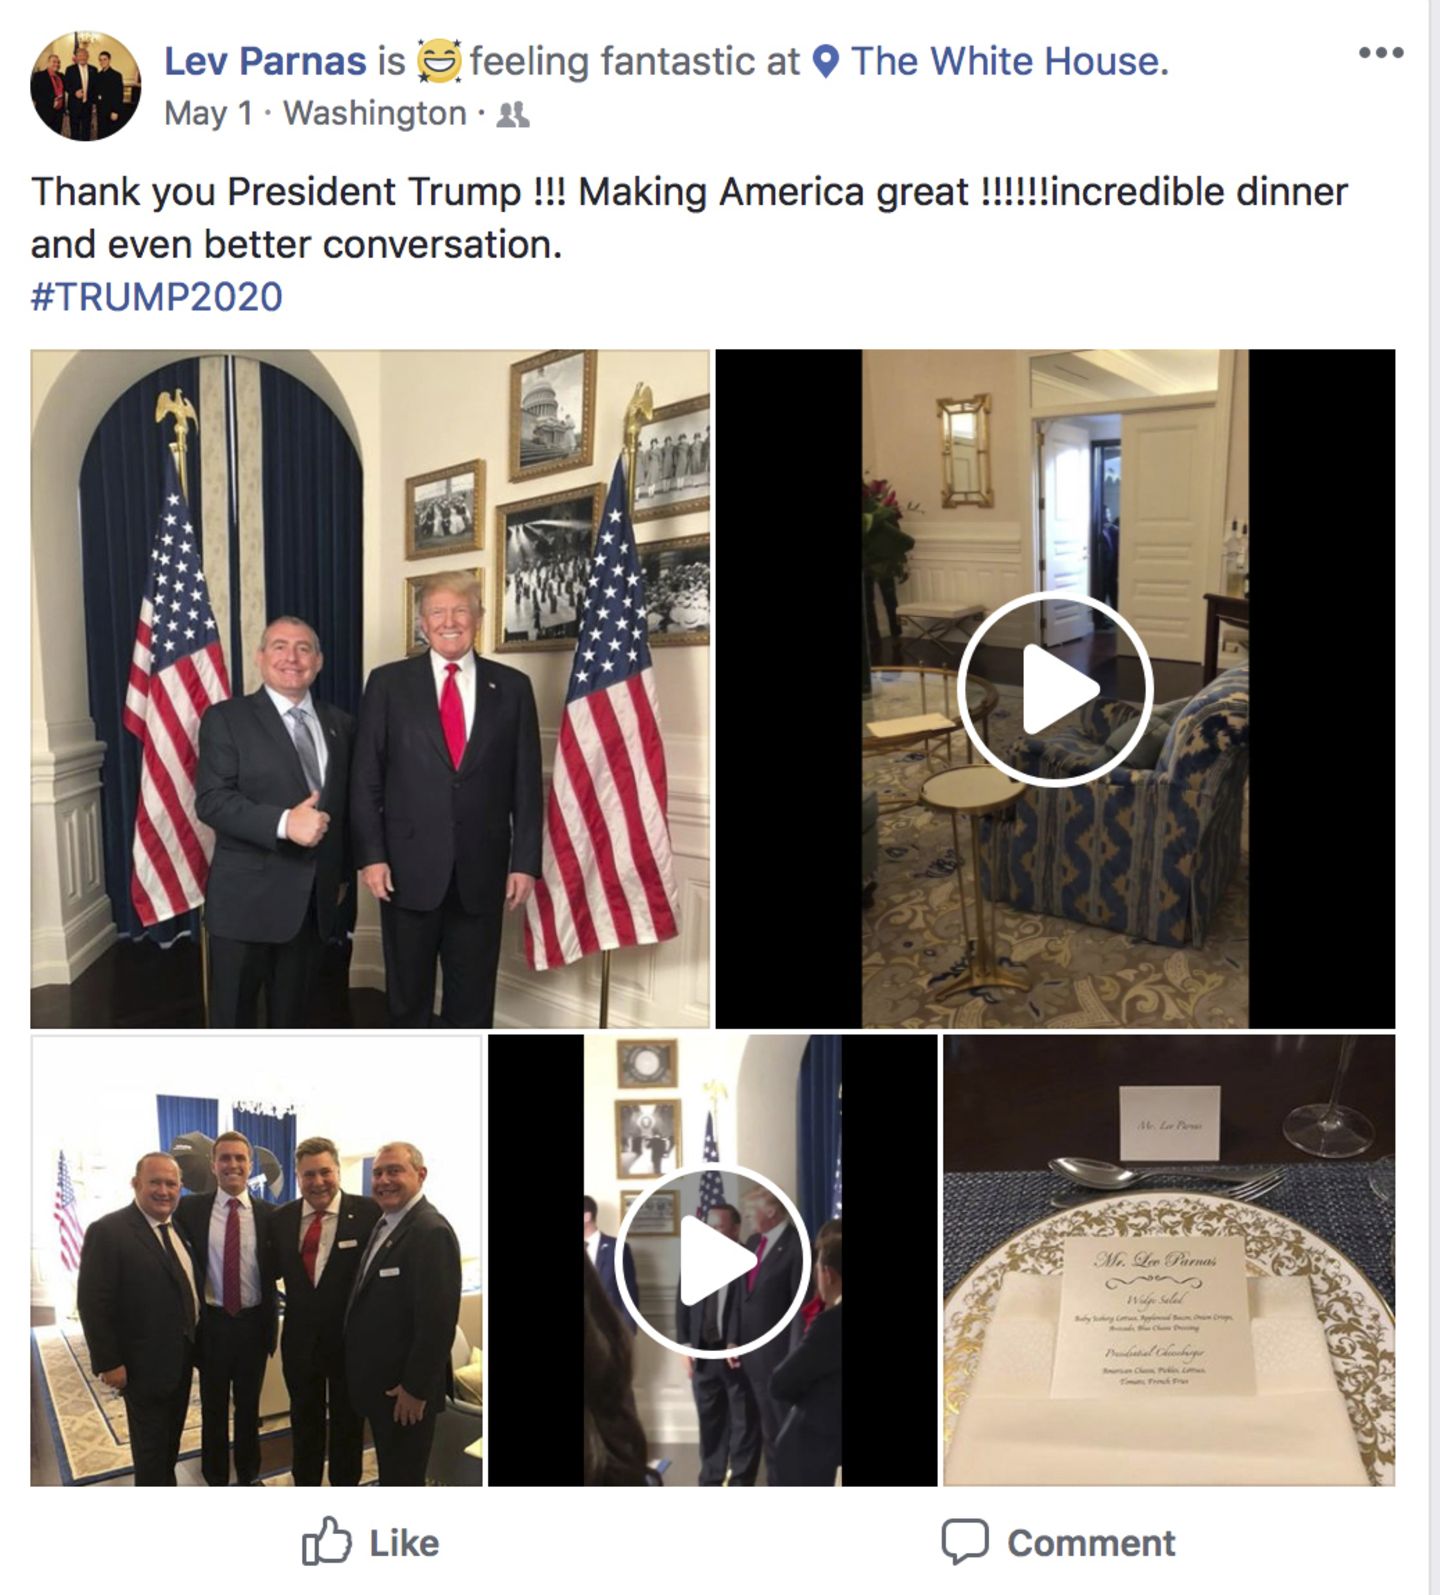 Dieser Facebook-Screenshot zeigt Präsident Donald Trump zusammen mit Lev Parnas (Foto oben links), im Weißen Haus in Washington, gepostet am 1. Mai 2018, kommentiert mit den Worten: "Danke Präsident Trump!!! Amerika groß machen!!!!!! Unglaubliches Abendessen und sogar noch bessere Konversation."